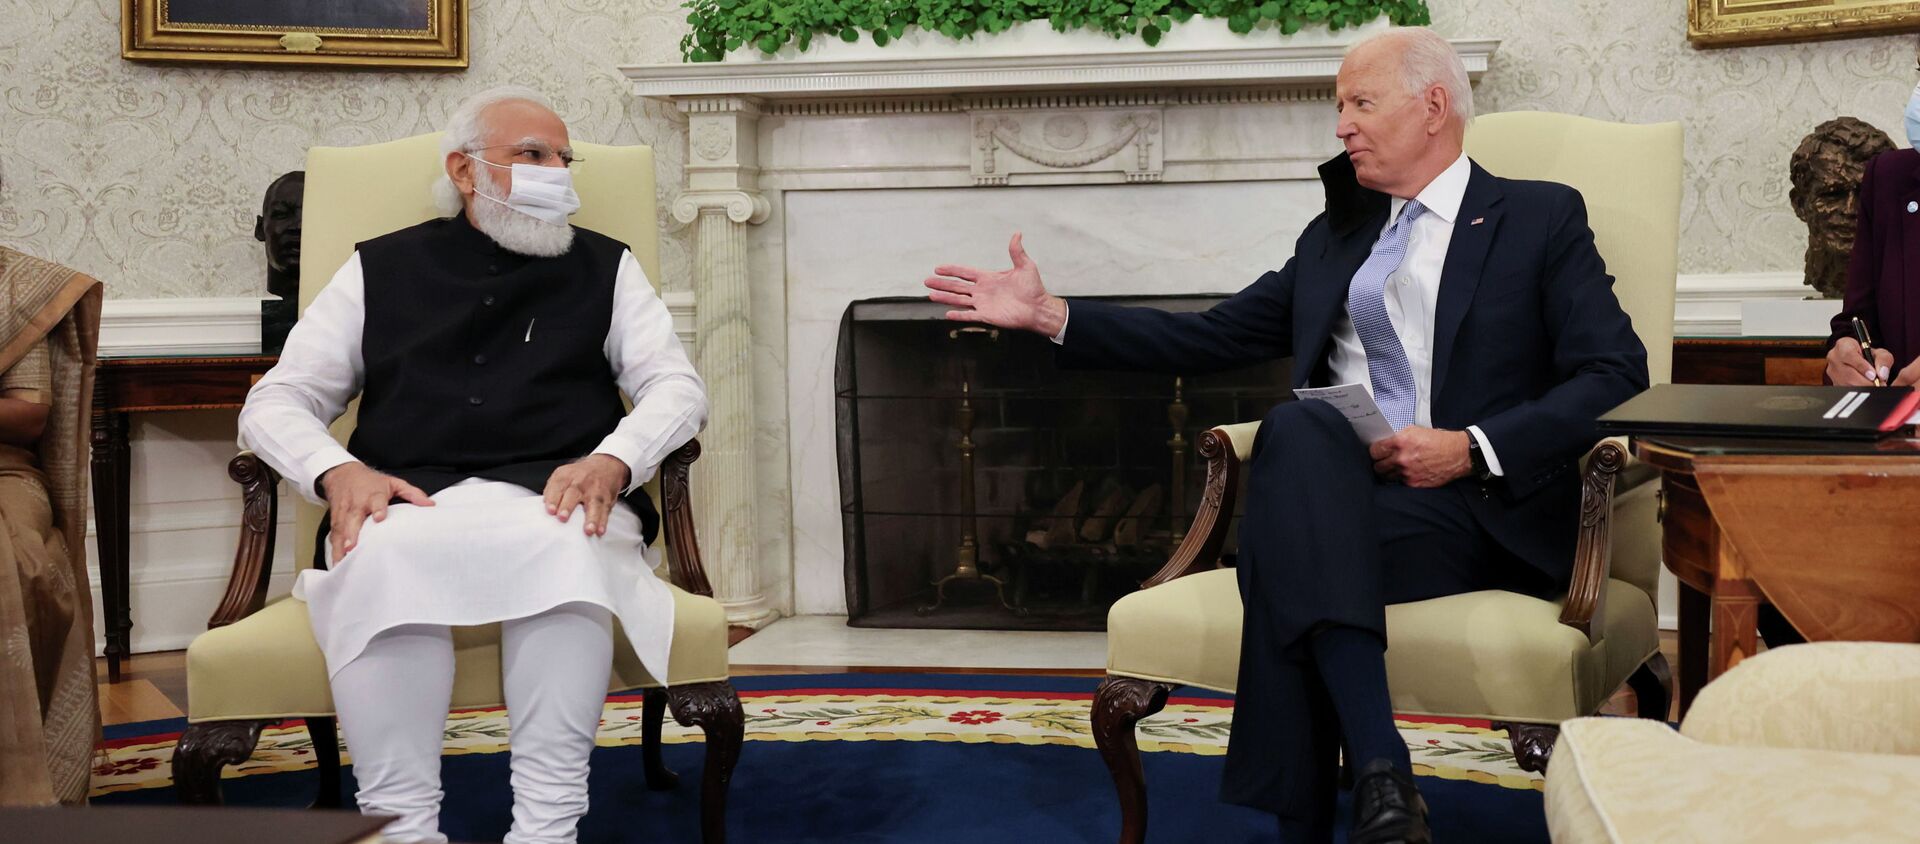 Встреча президента США Джо Байдена с премьер-министром Индии Нарендрой Моди  - Sputnik Кыргызстан, 1920, 25.09.2021